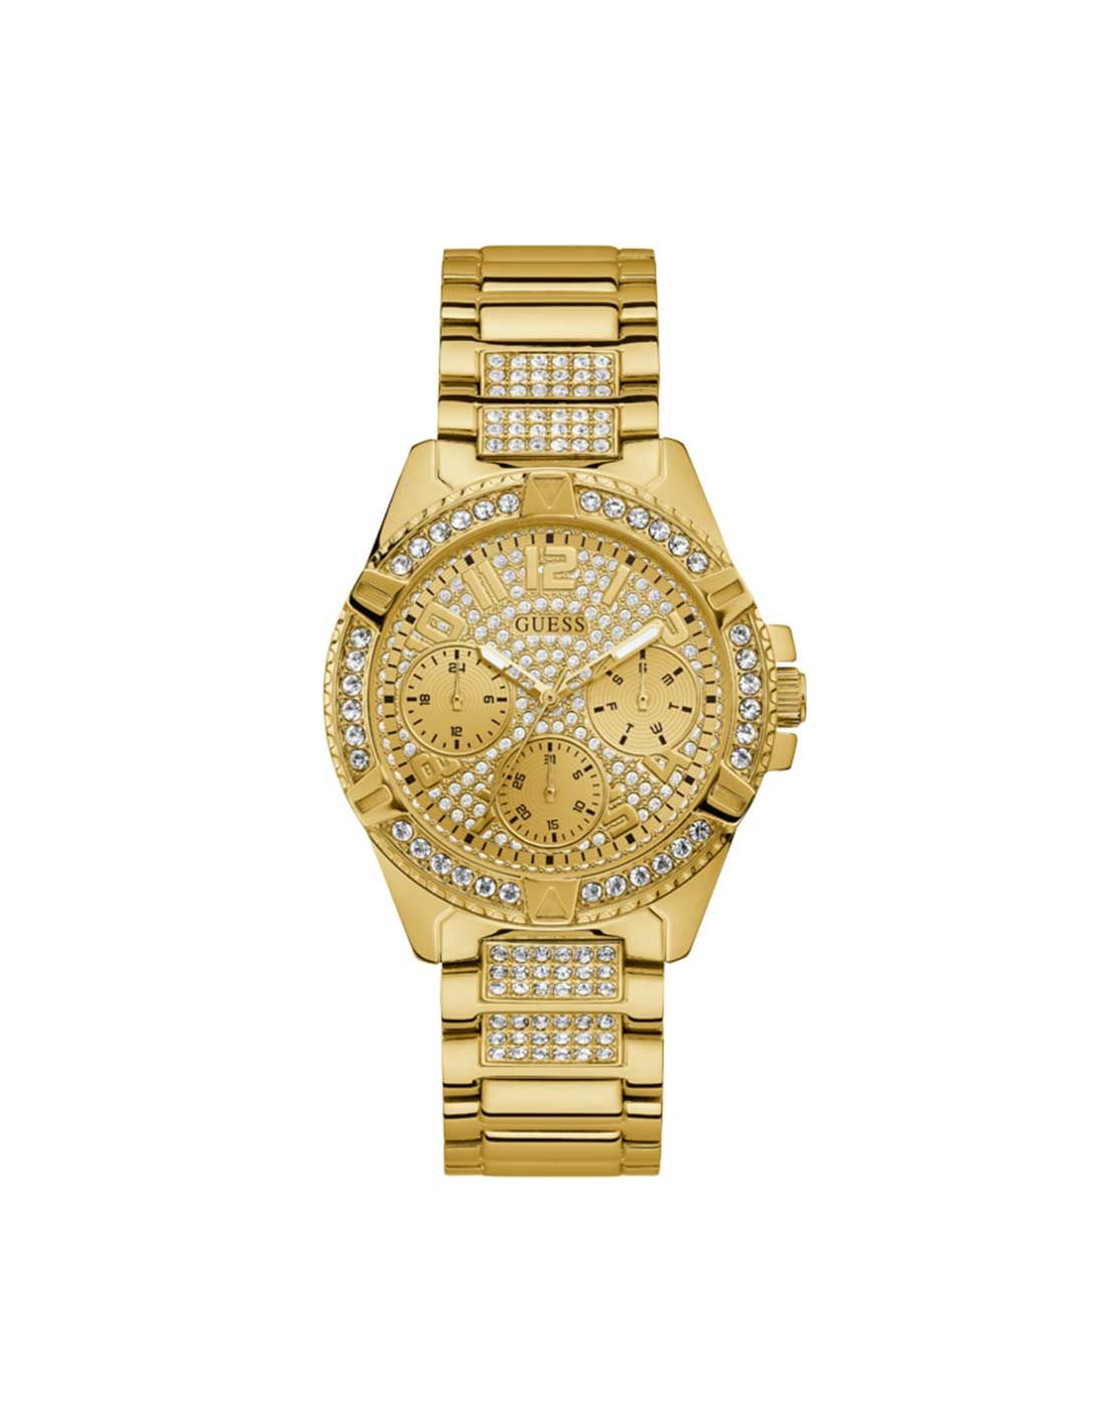 Reloj mujer Guess W1156L2 dorado y cristales